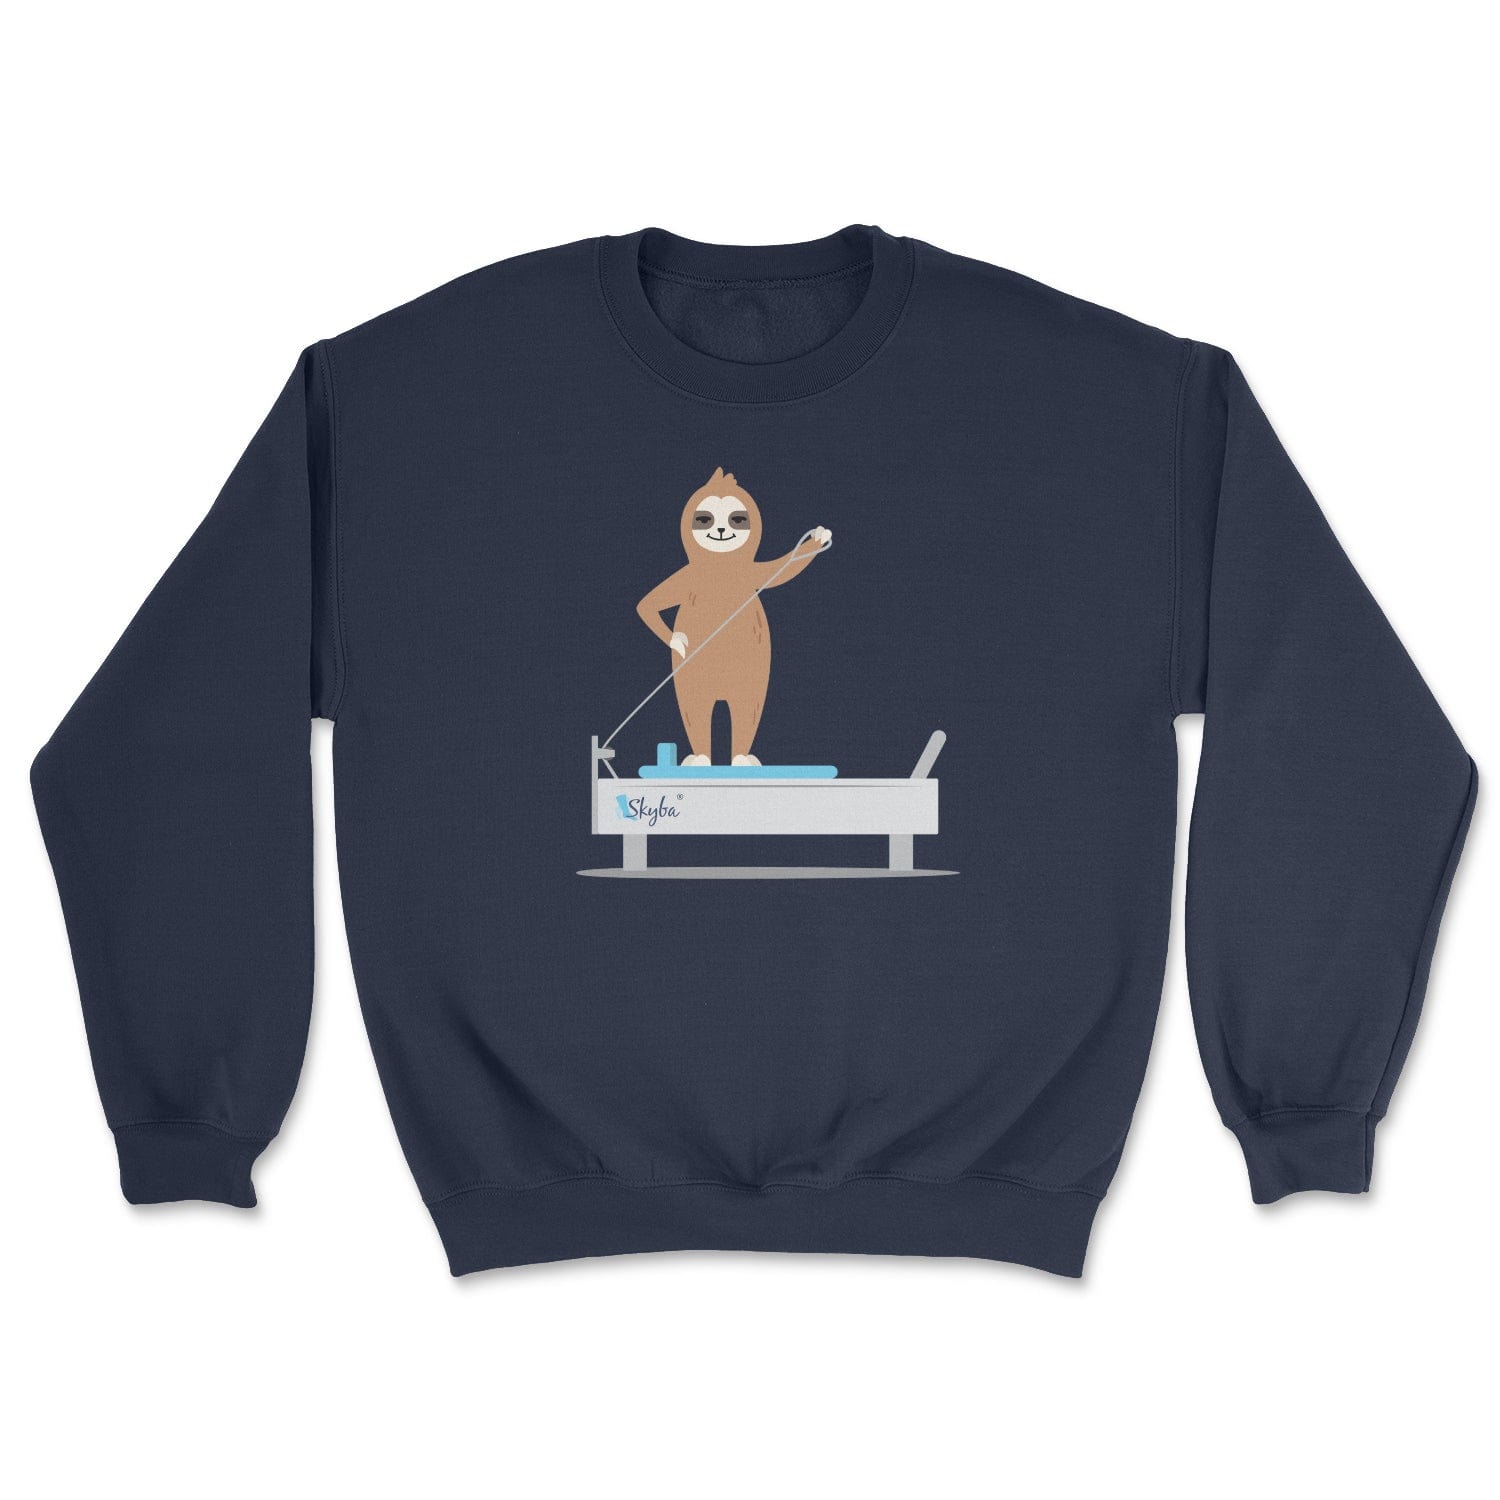 Sloth on the Reformer - Cozy Crewneck Sweatshirt Skyba Sweatshirt